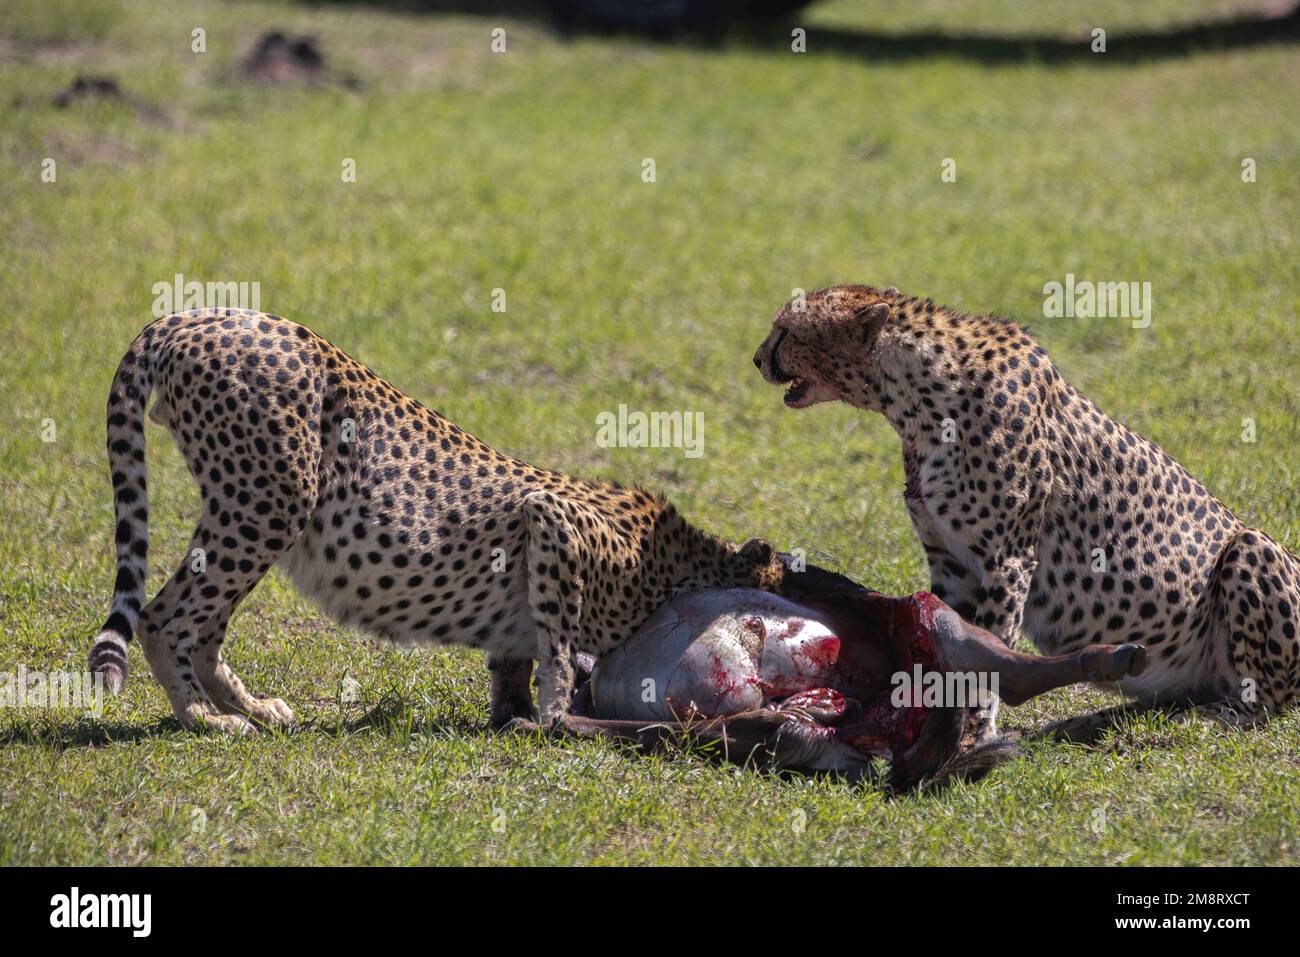 Les cheetahs mangent leur mort pendant que les visiteurs de safari regardent Banque D'Images